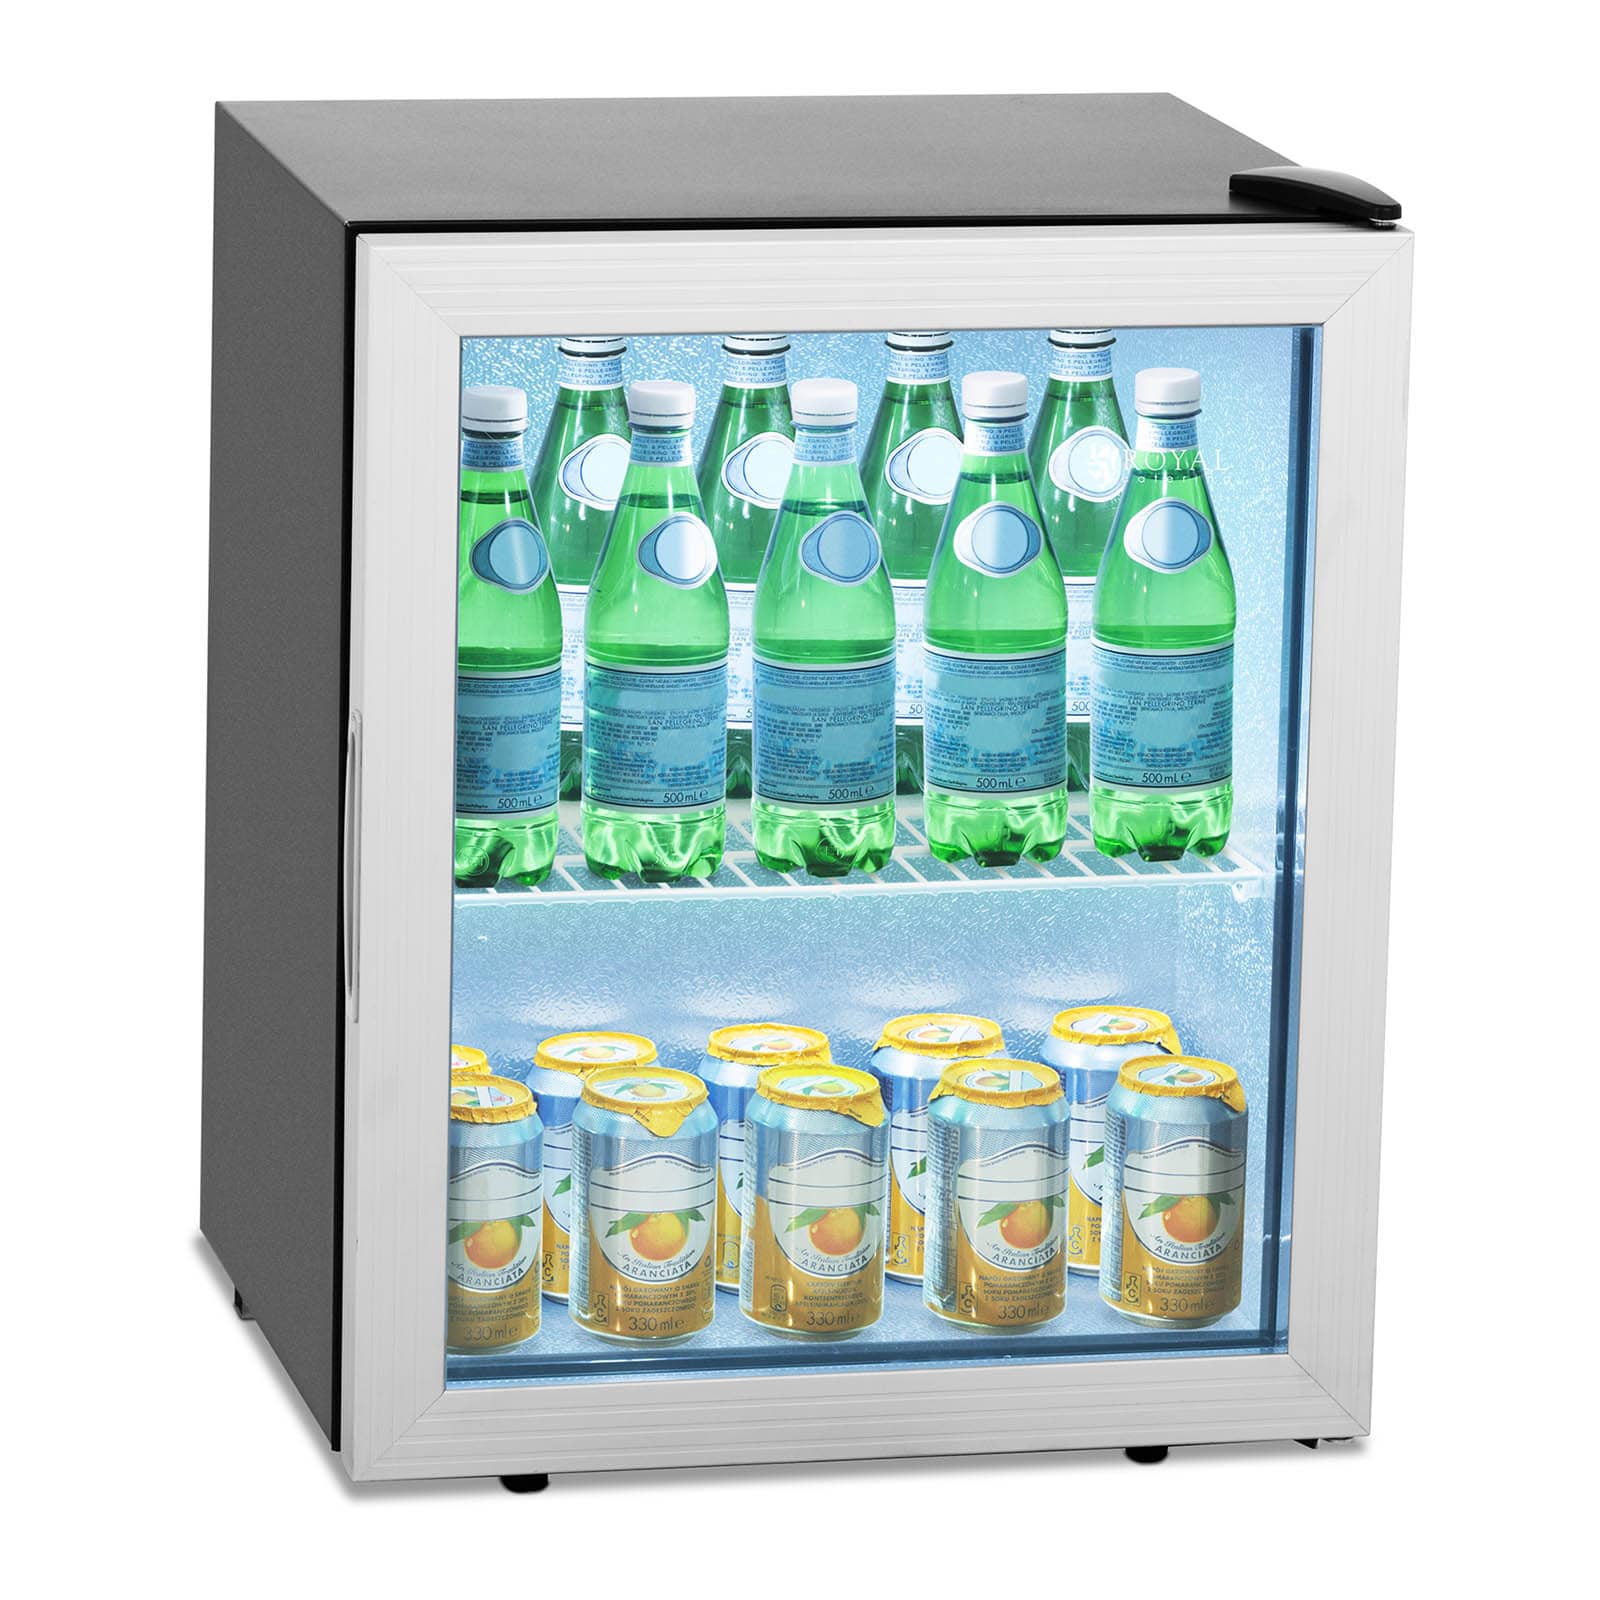 Comment choisir un frigo mini bar ? 